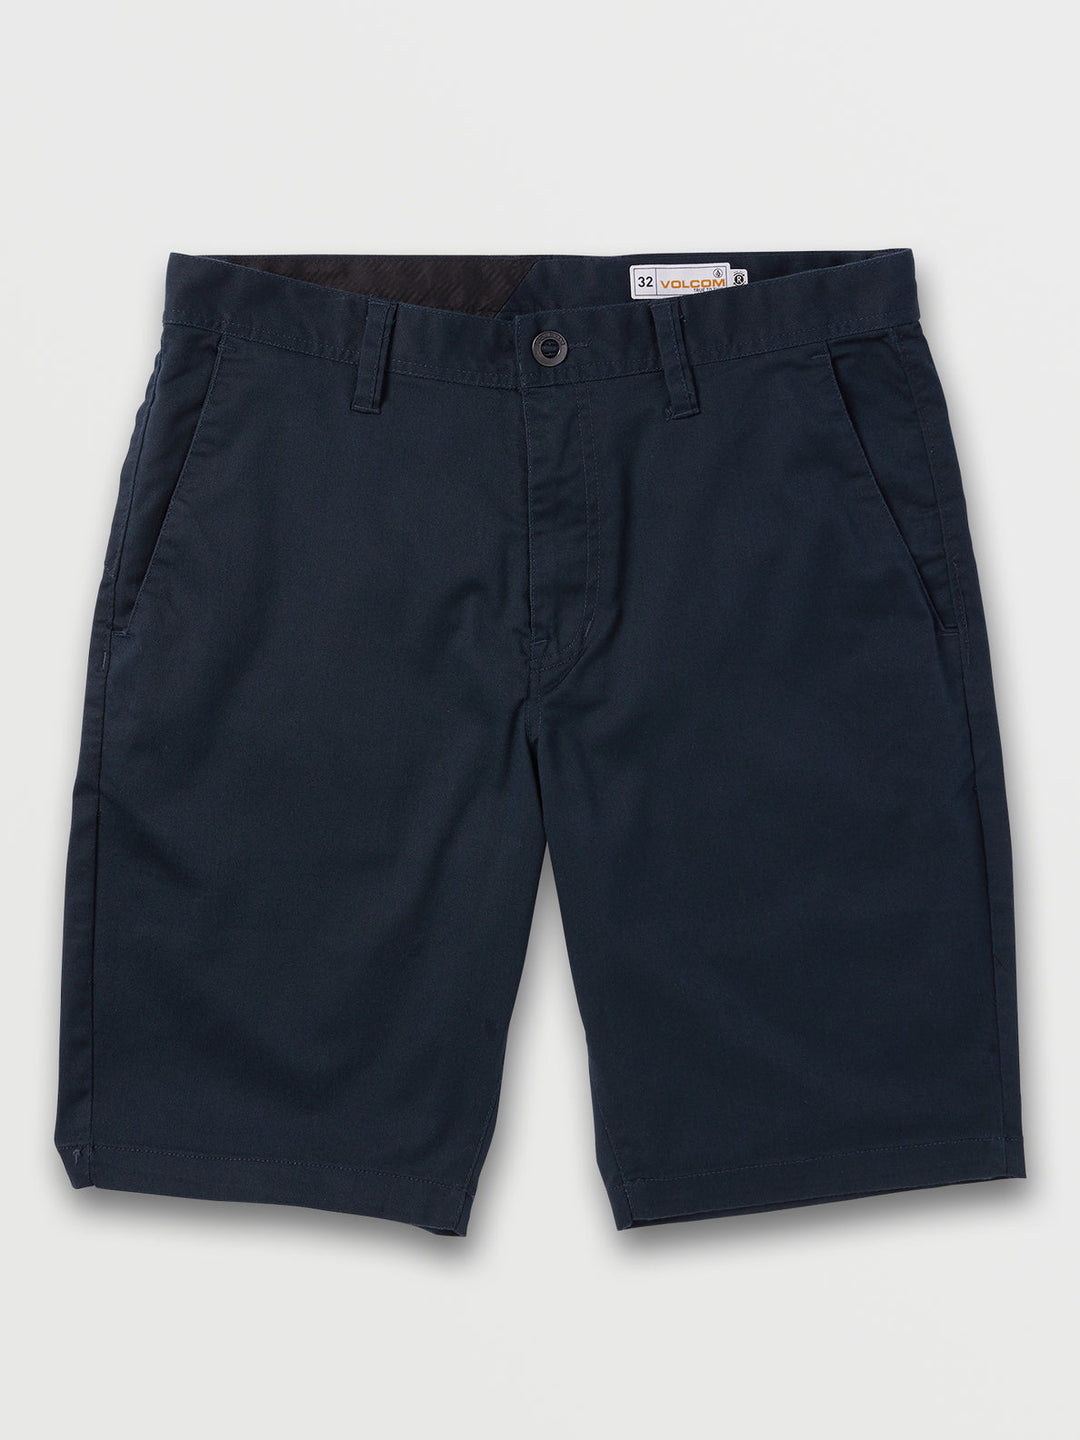 Volcom Frickin Modern Stretch Shorts - Dark Navy - Sun Diego Boardshop